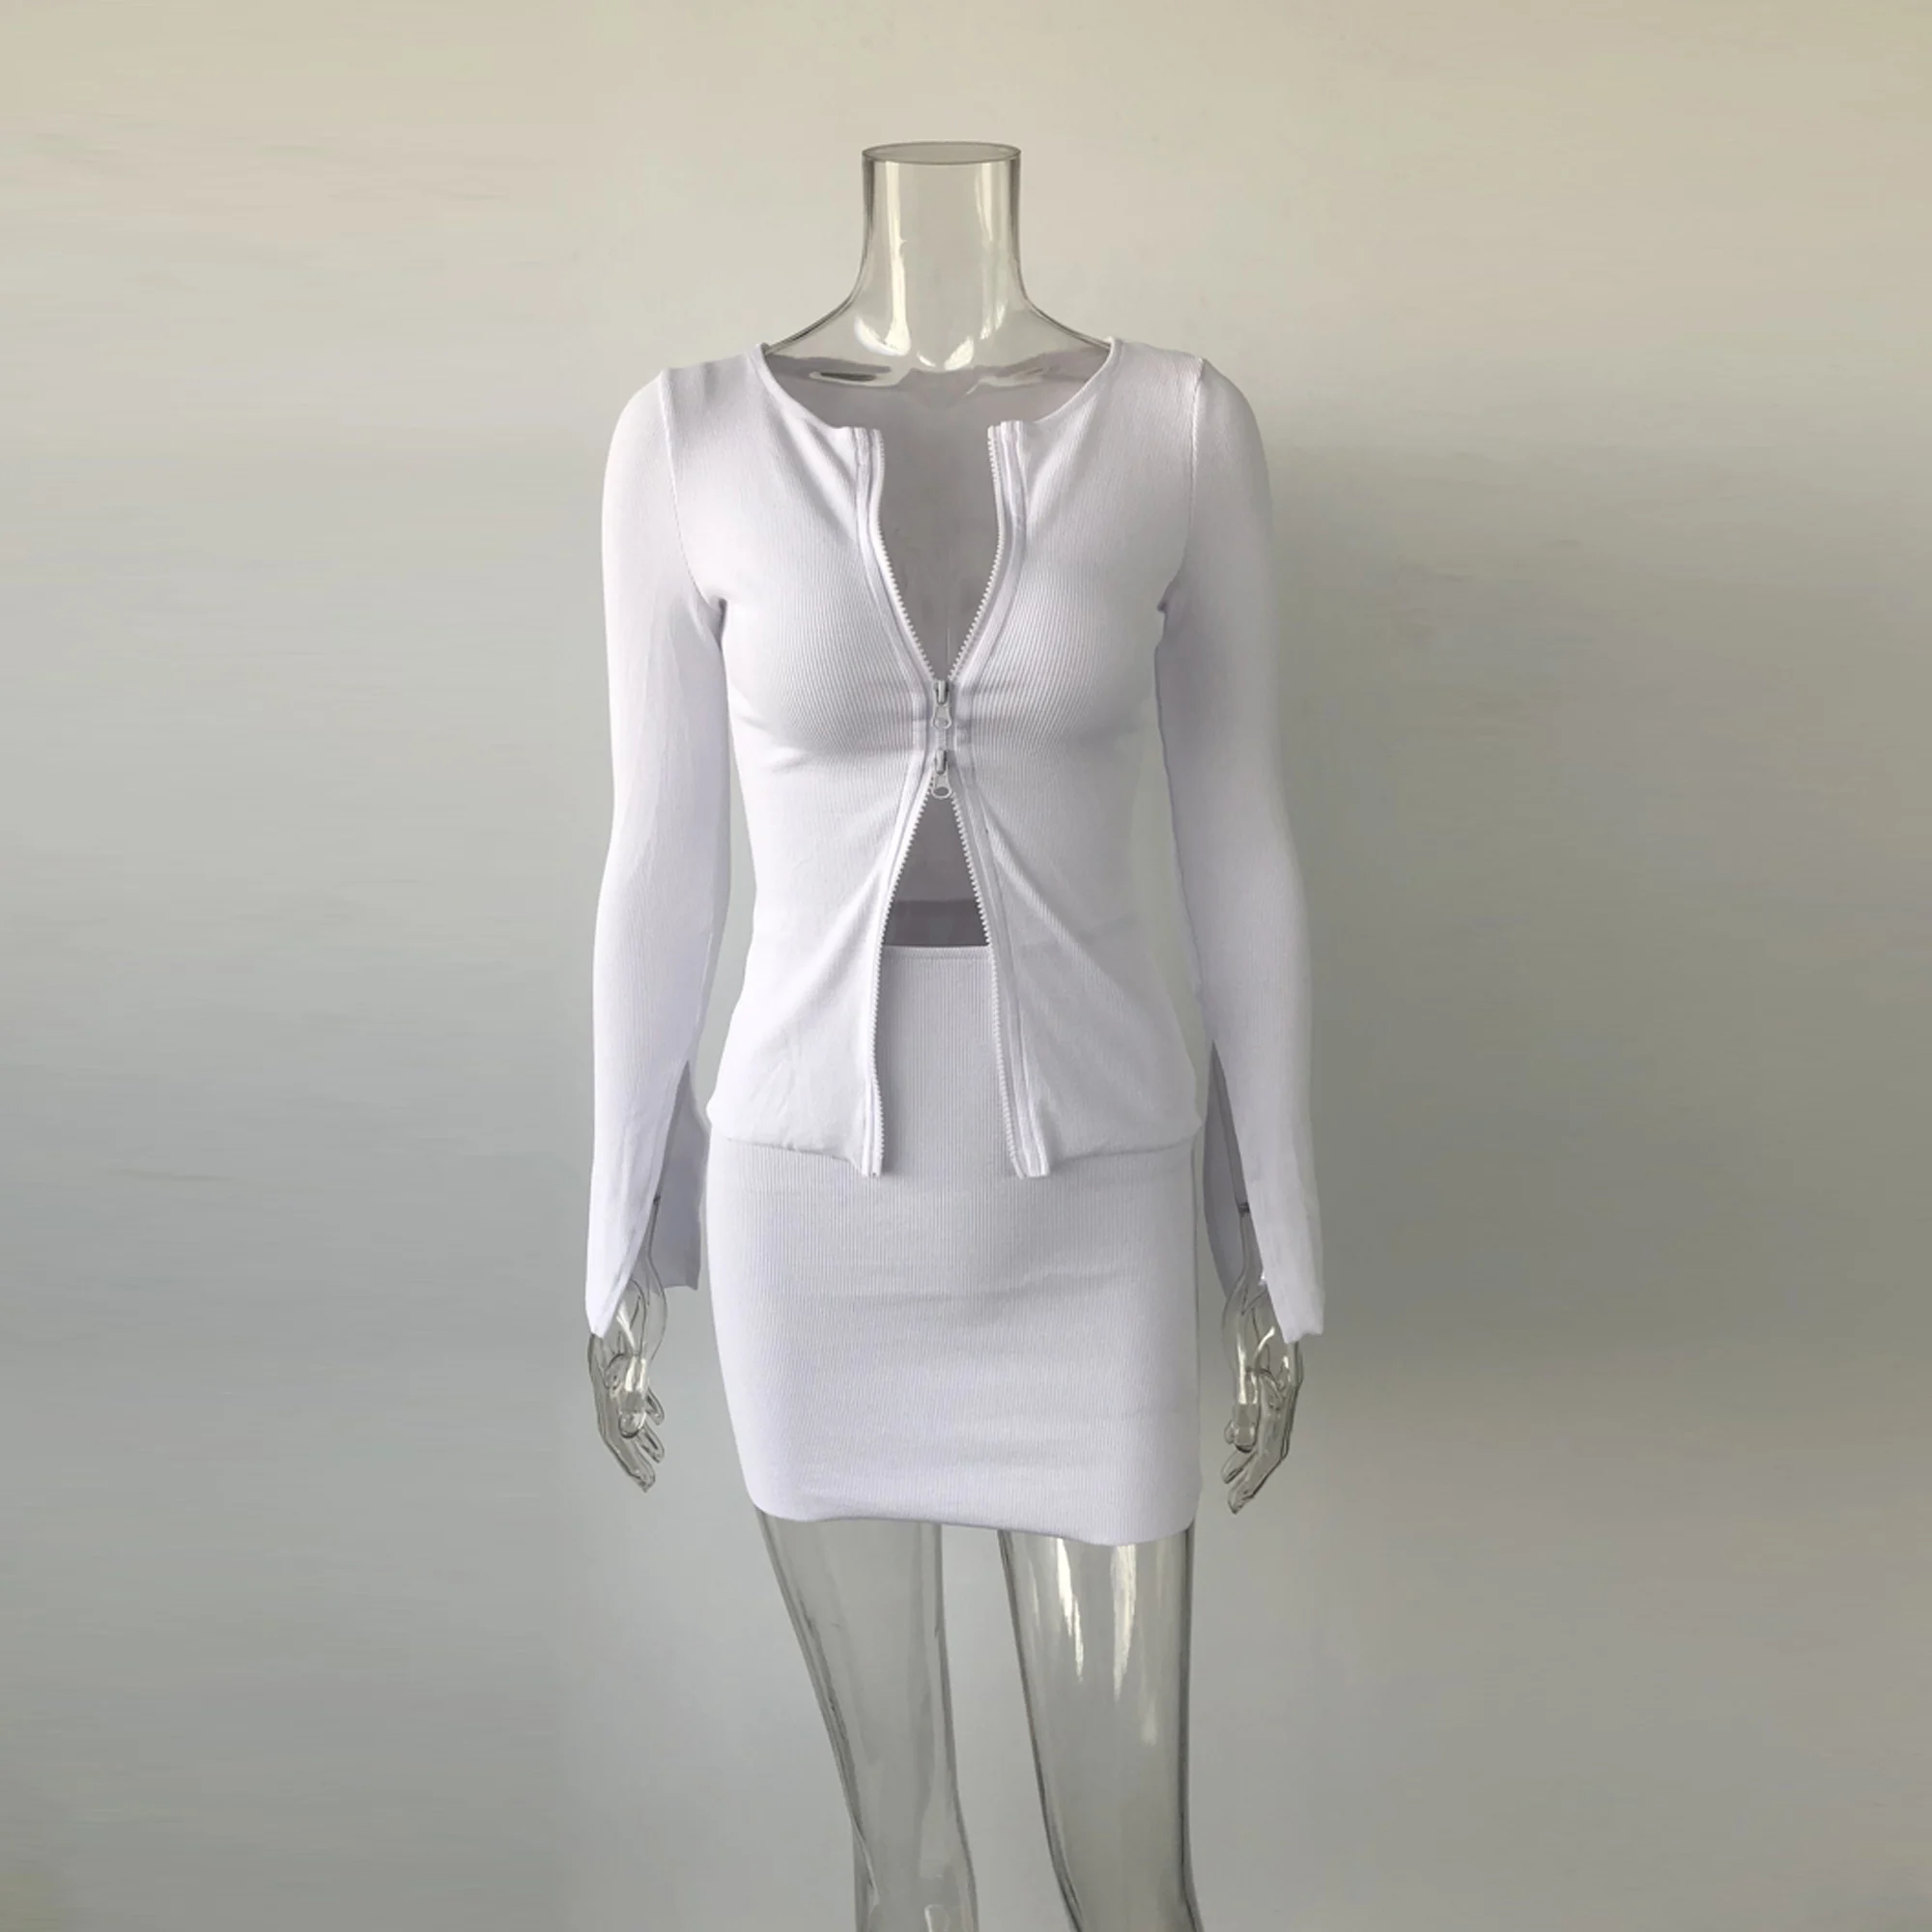 XLLAIS хлопок ребристый белый из двух частей наряды для женщин двойной молнии пальто из мягкой ткани и юбки карандаш подходящие 2 комплекта хорошее качество топы